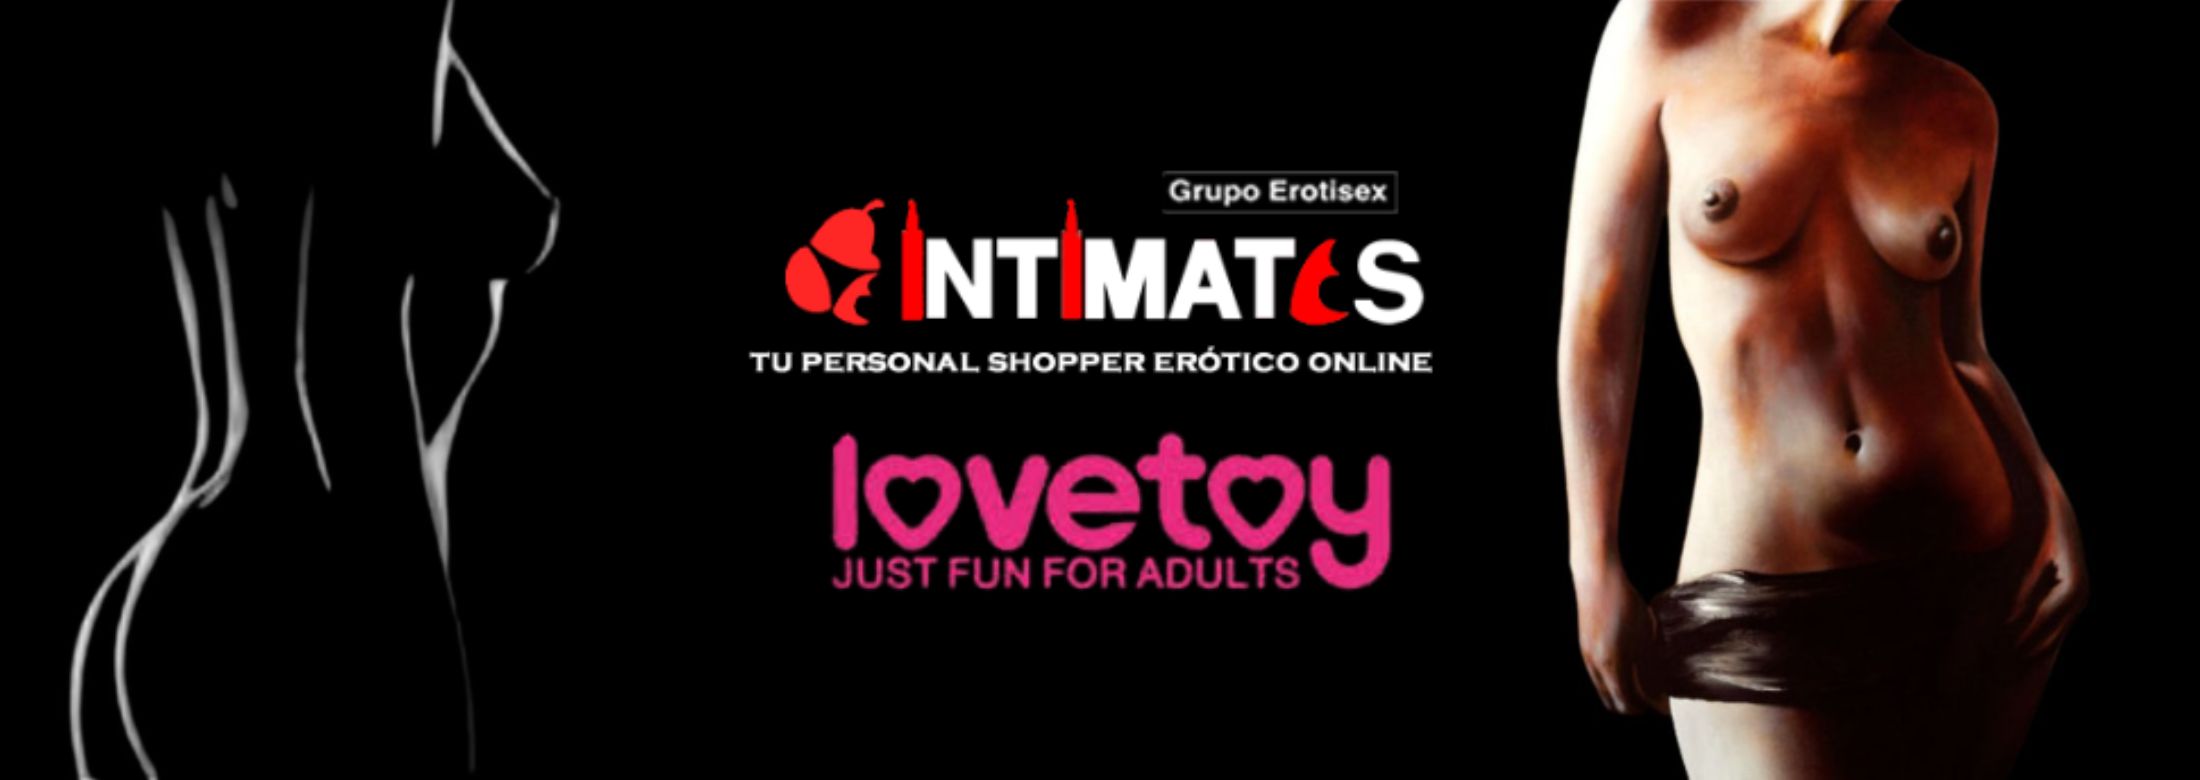 Descubre los masturbadores, con Lovetoy, que puedes adquirir en intimates.es "Tu Personal Shopper Erótico Online"